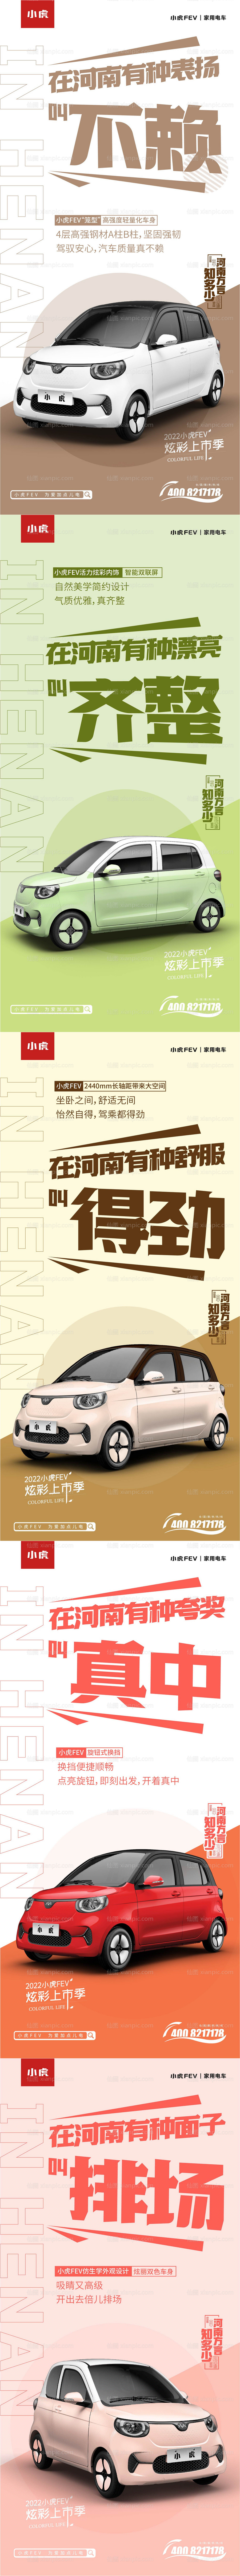 素材乐-方言河南创意汽车海报